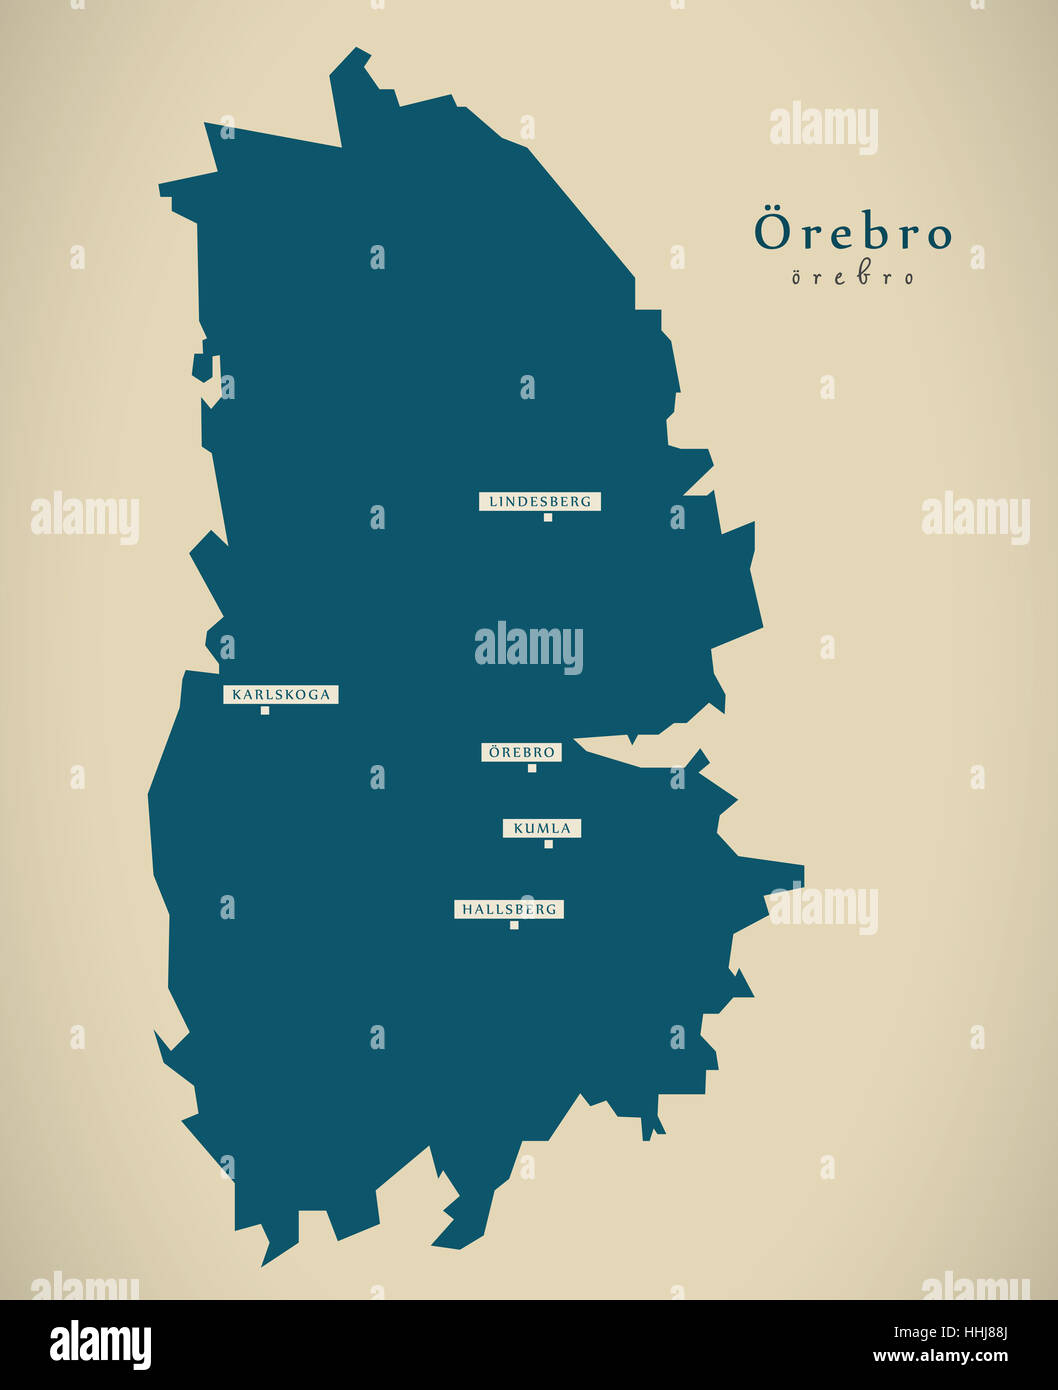 Mappa moderno - Orebro Svezia se illustrazione Foto Stock